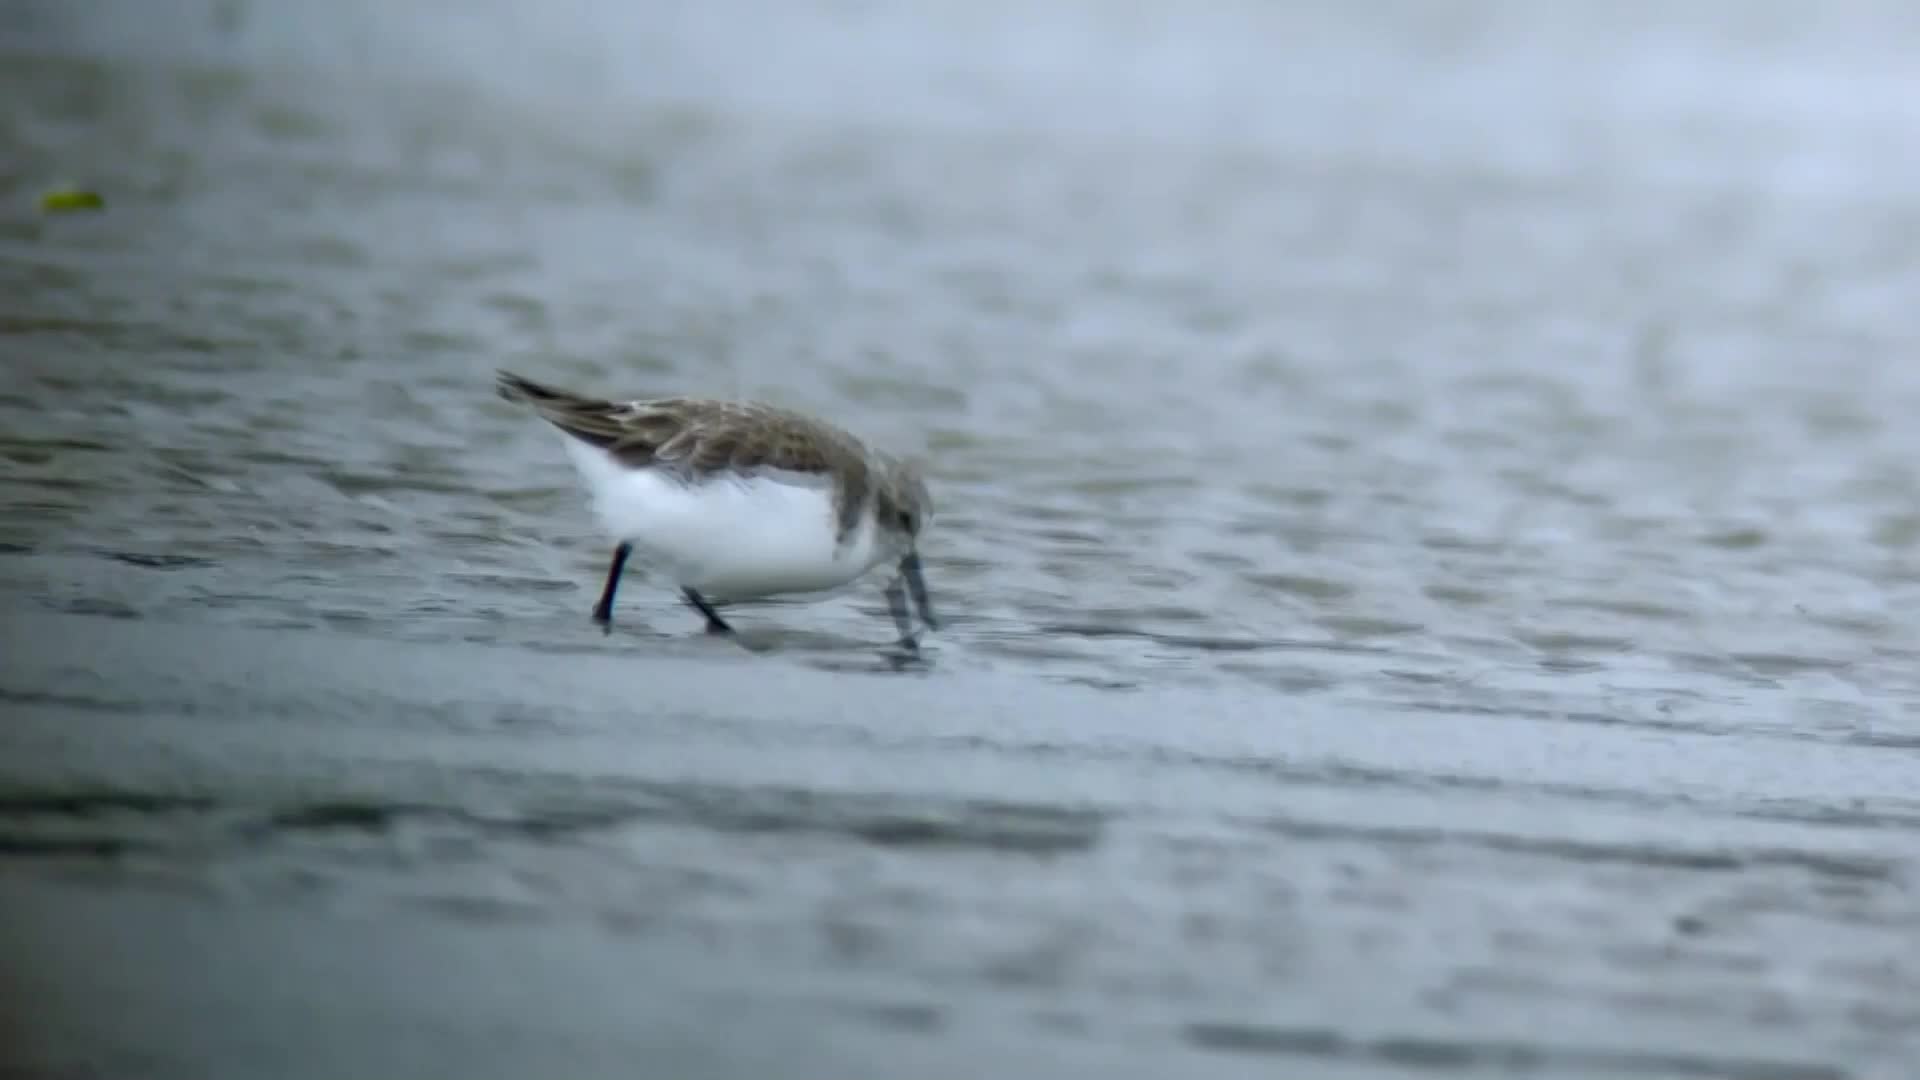 เมืองในจีนพบ 'นกอพยพ' หายาก พักหลบหนาวริมทะเล